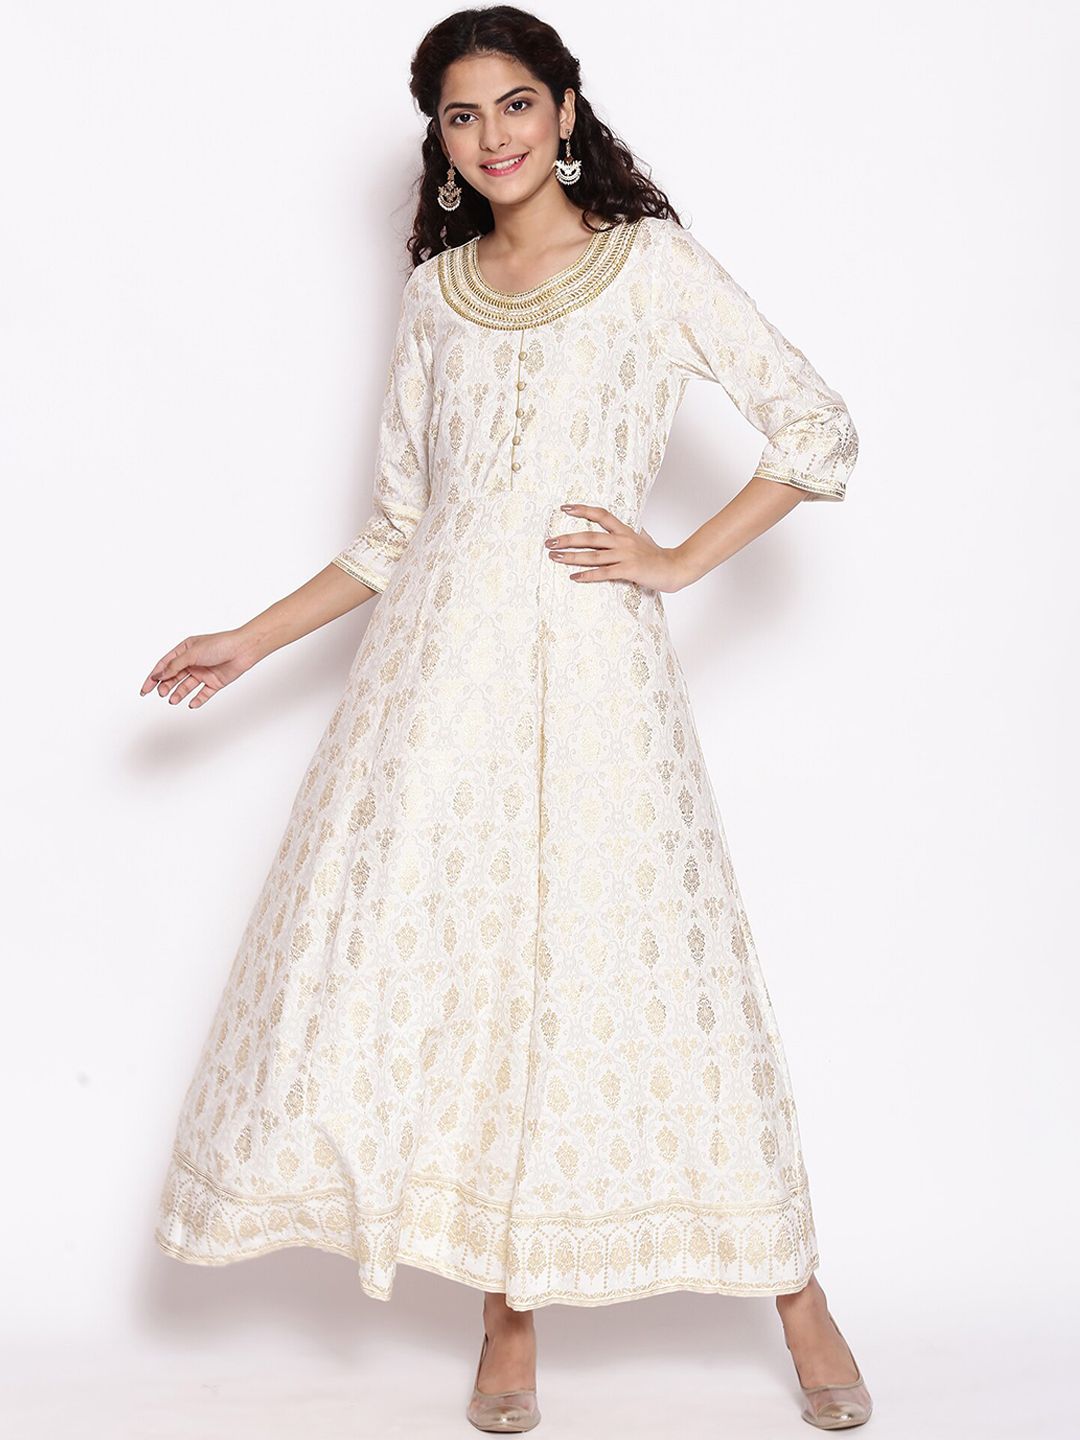 AURELIA White Ethnic Motifs Ethnic Maxi Dress Price in India